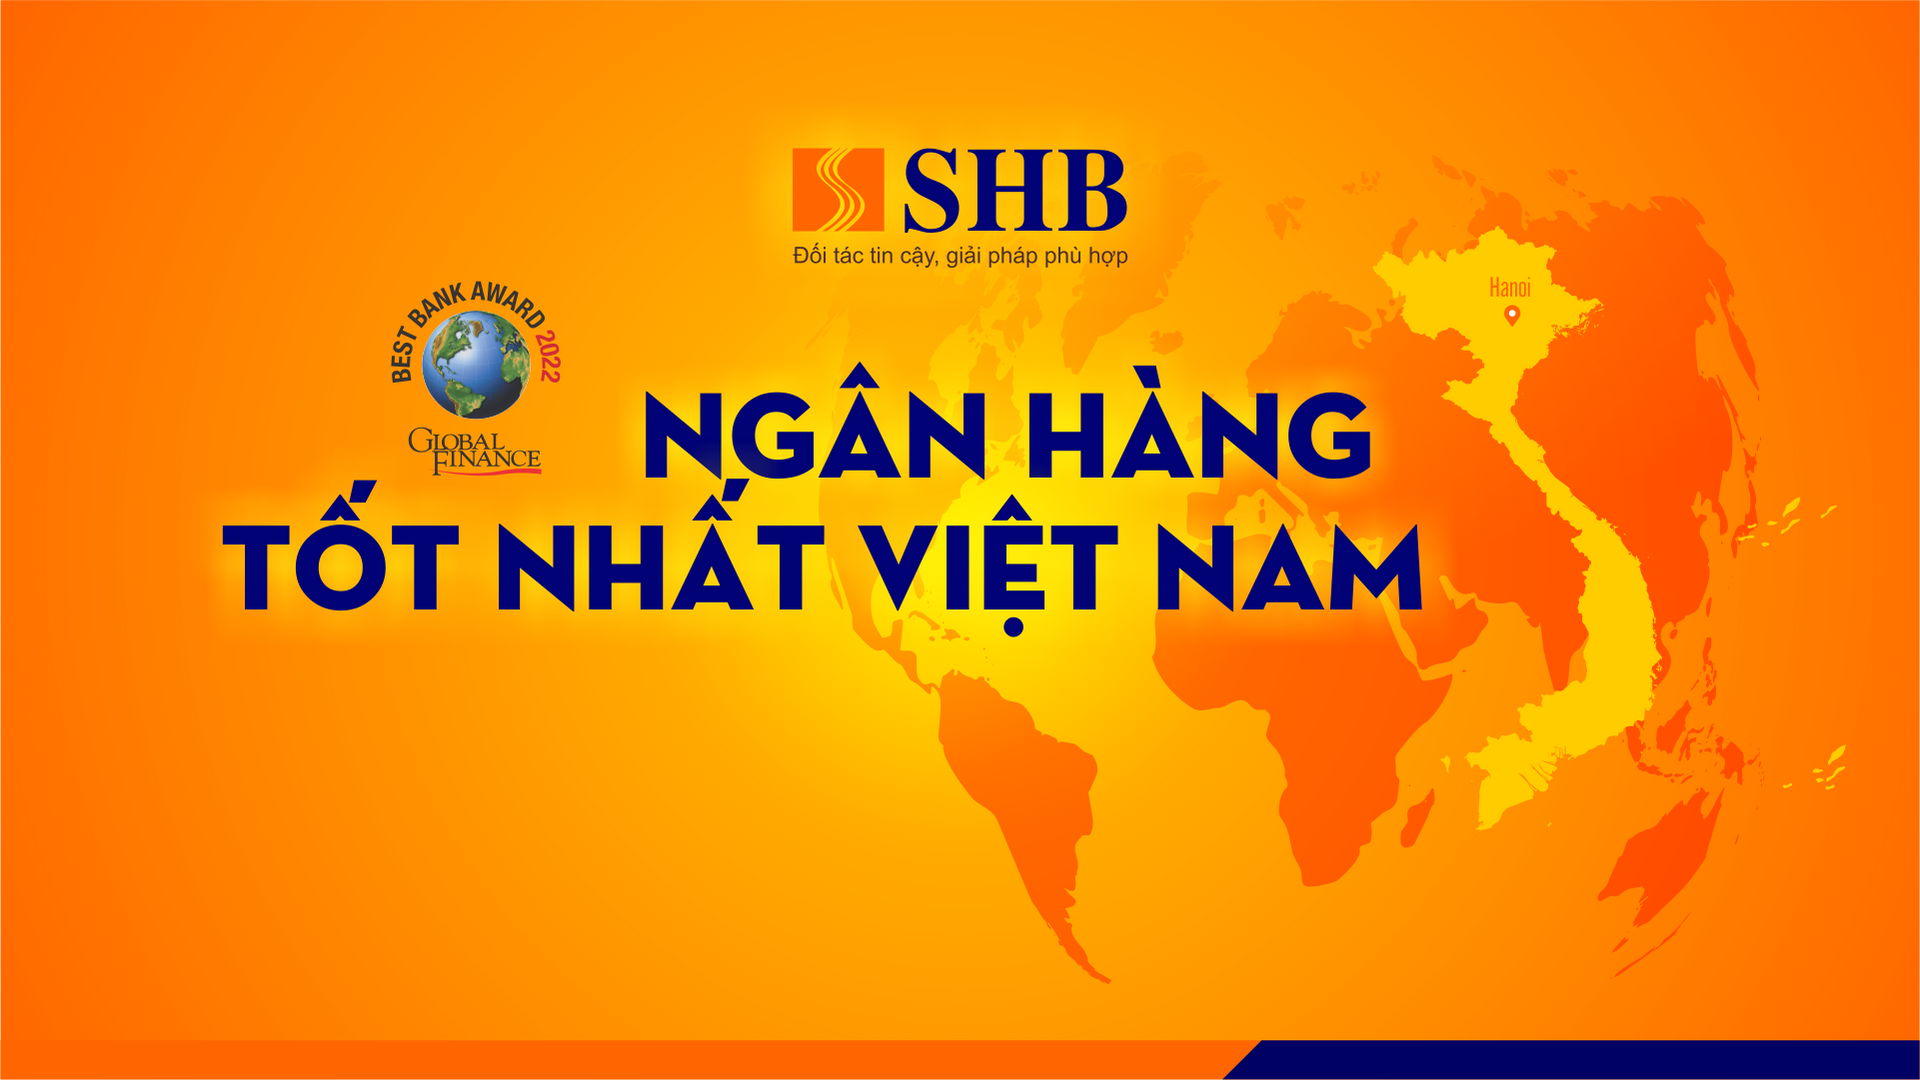 SHB được vinh danh là Ngân hàng tốt nhất Việt Nam - 1